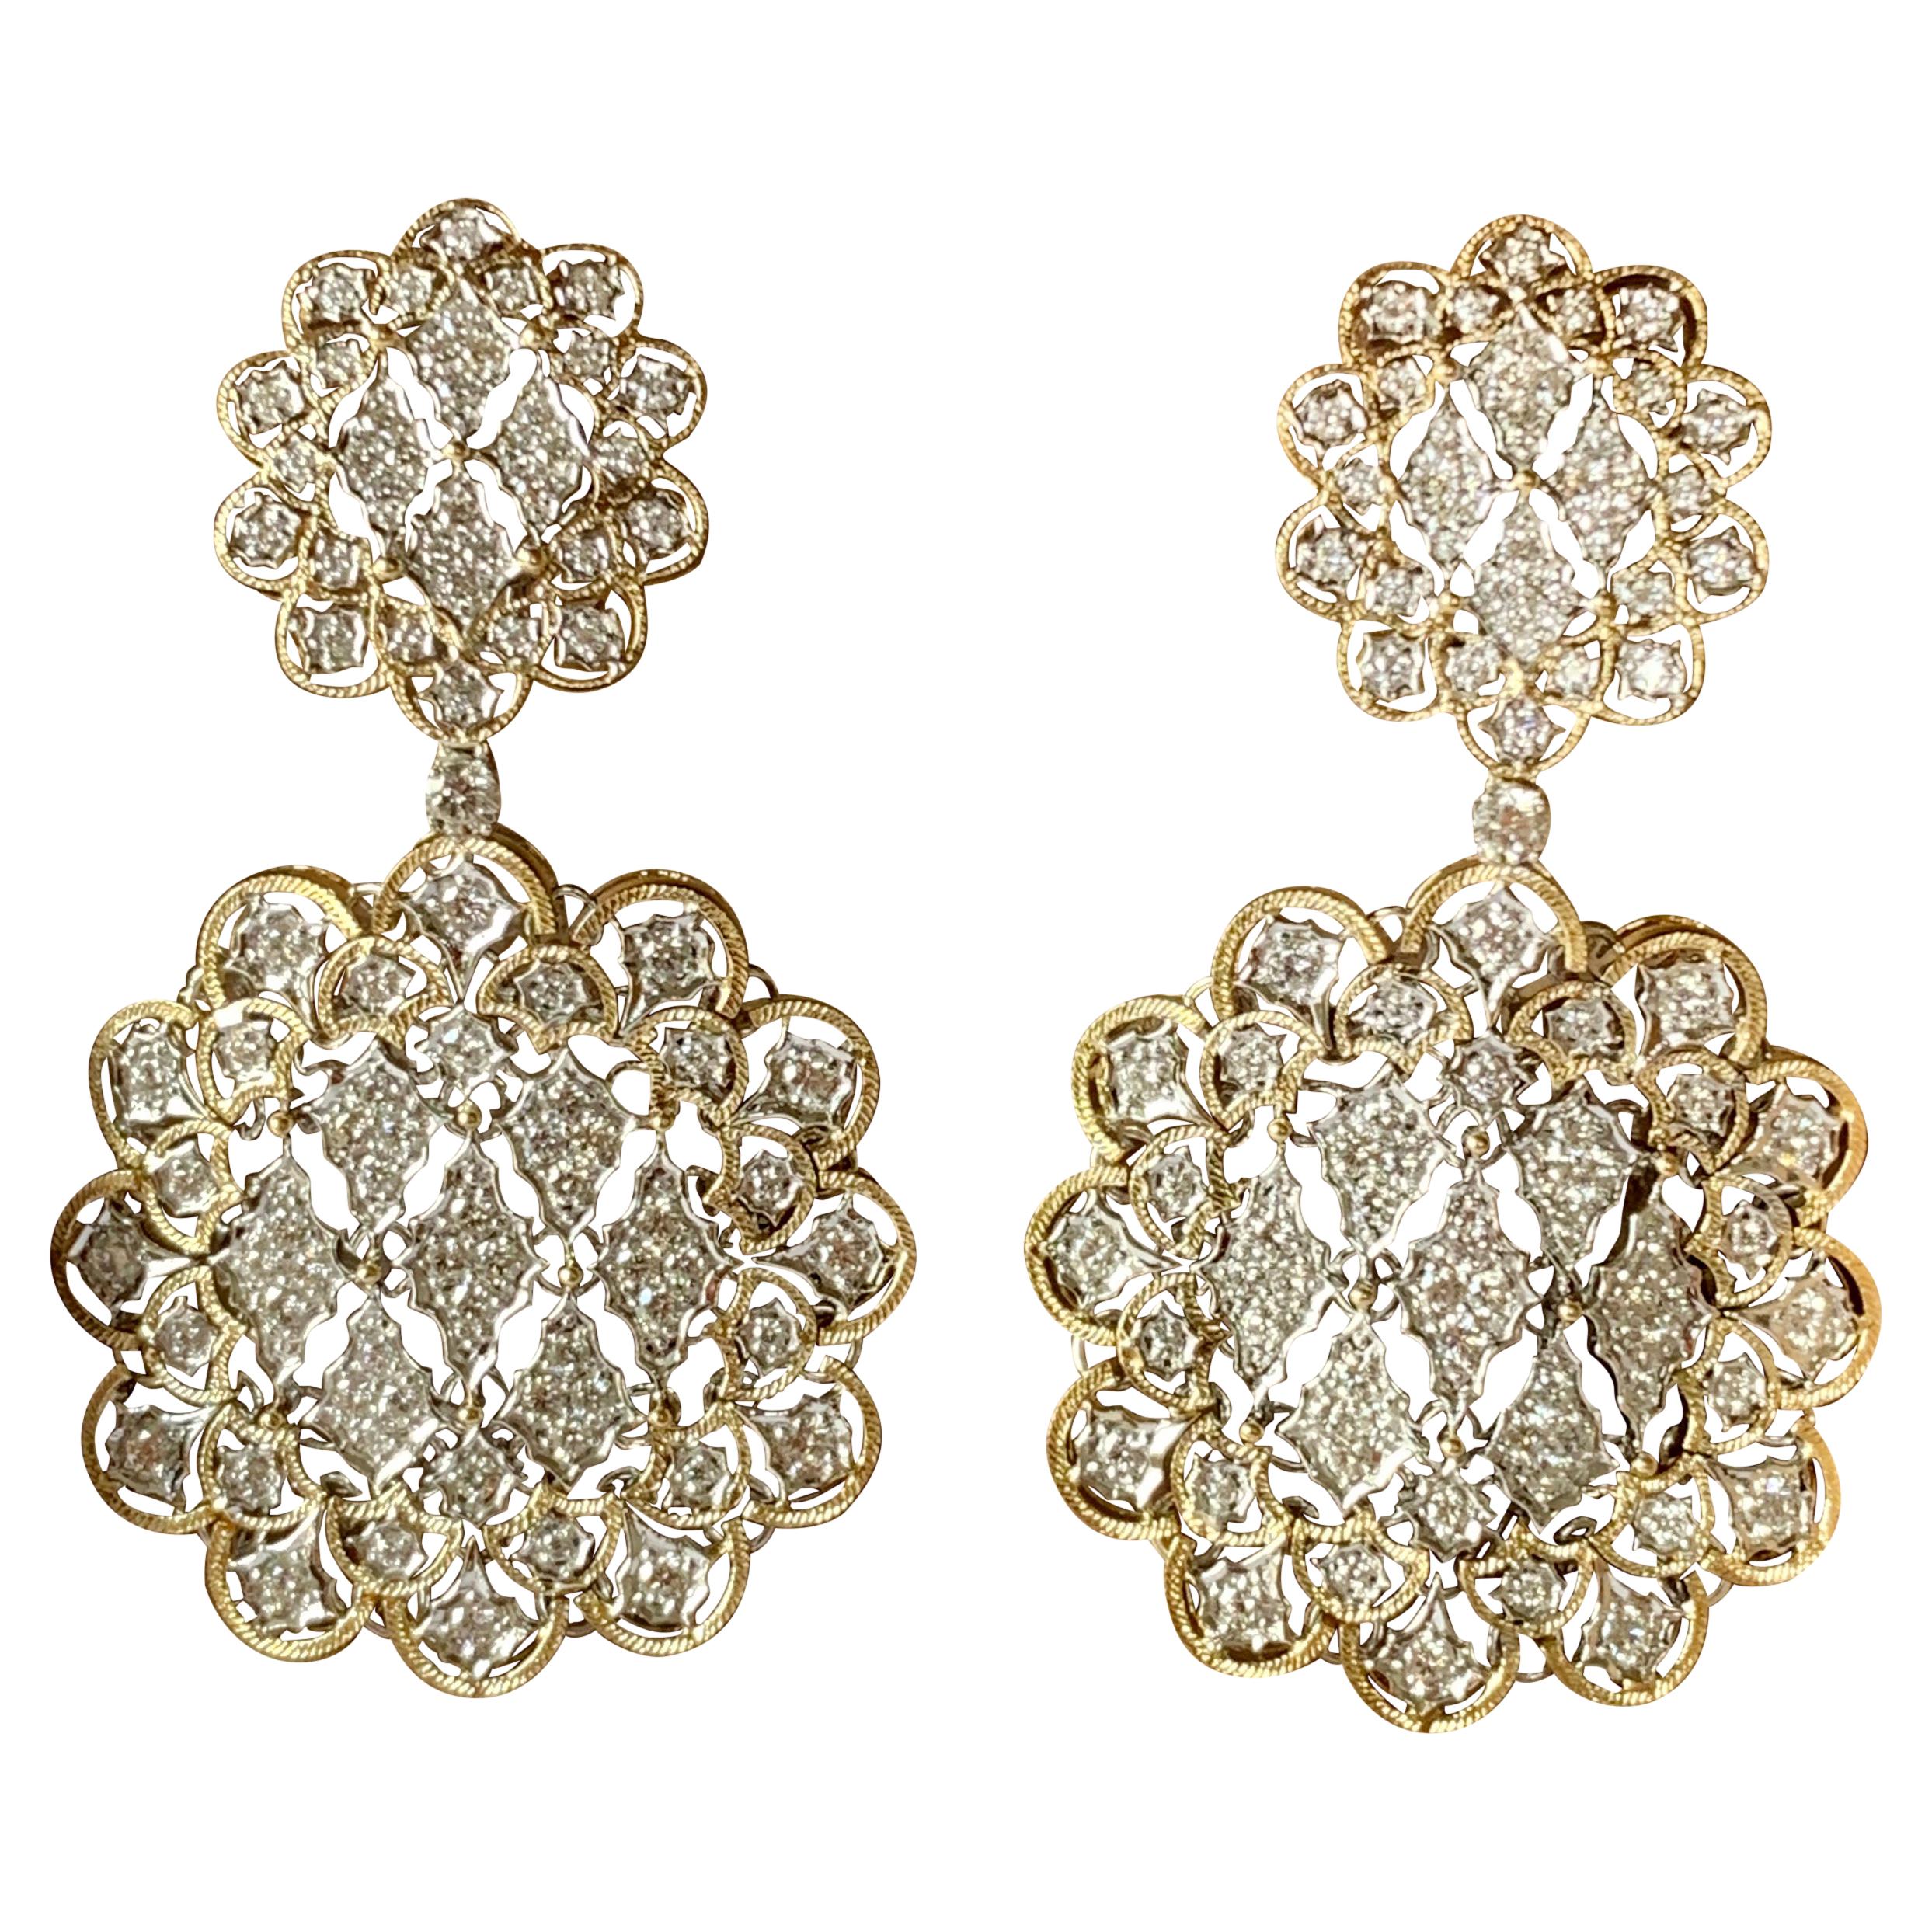 Ein Paar glorreiche Ohrringe aus 18 Karat Weiß- und Gelbgold mit Diamanten